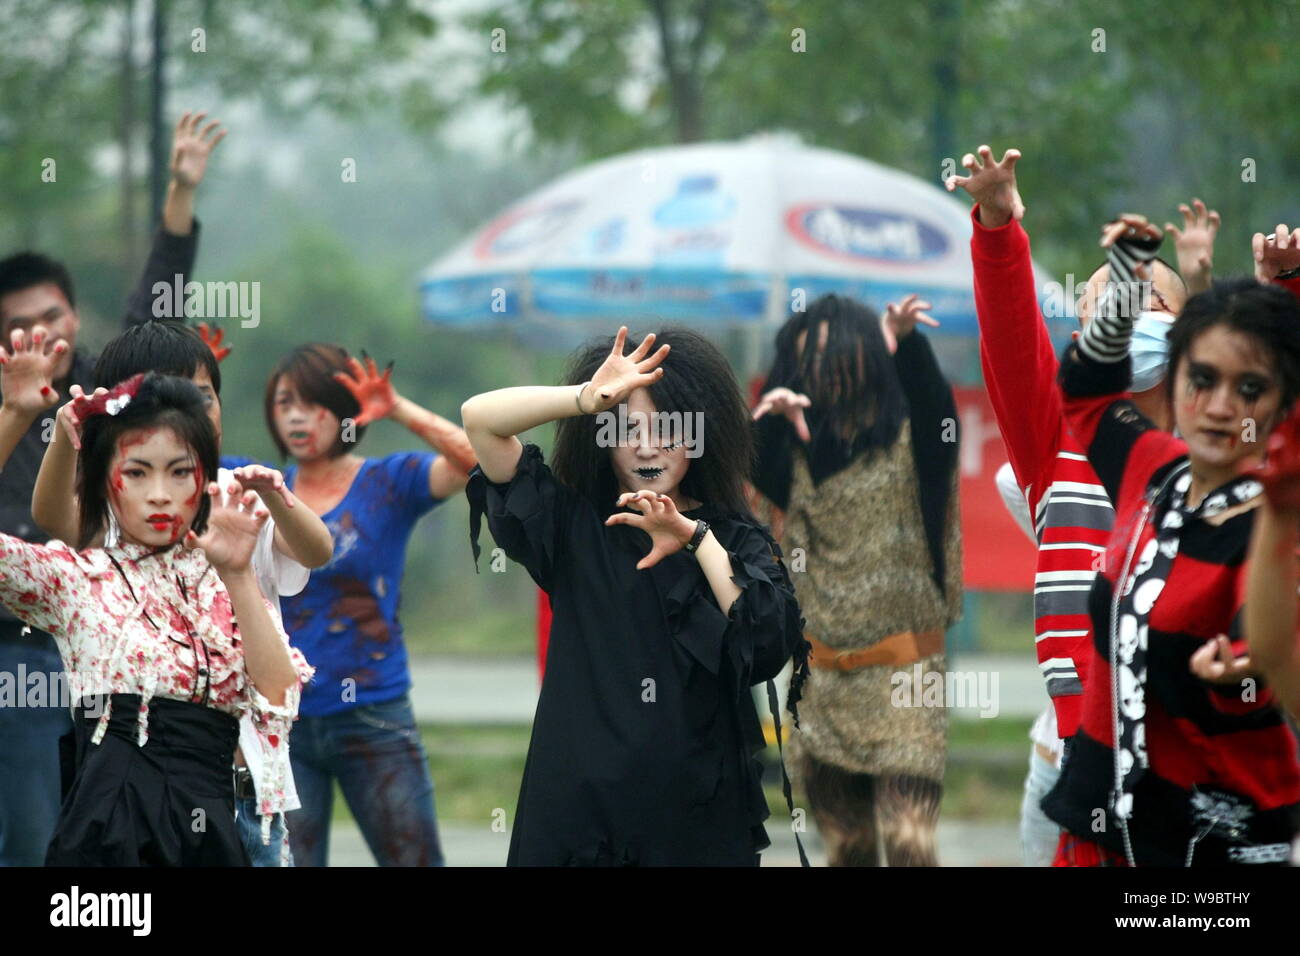 Michael Jackson fans chinois de la danse à la chanson Thriller de Michael Jackson durant le frisson l'événement mondial à Chongqing, Chine, dimanche, 25 Octobre 2 Banque D'Images